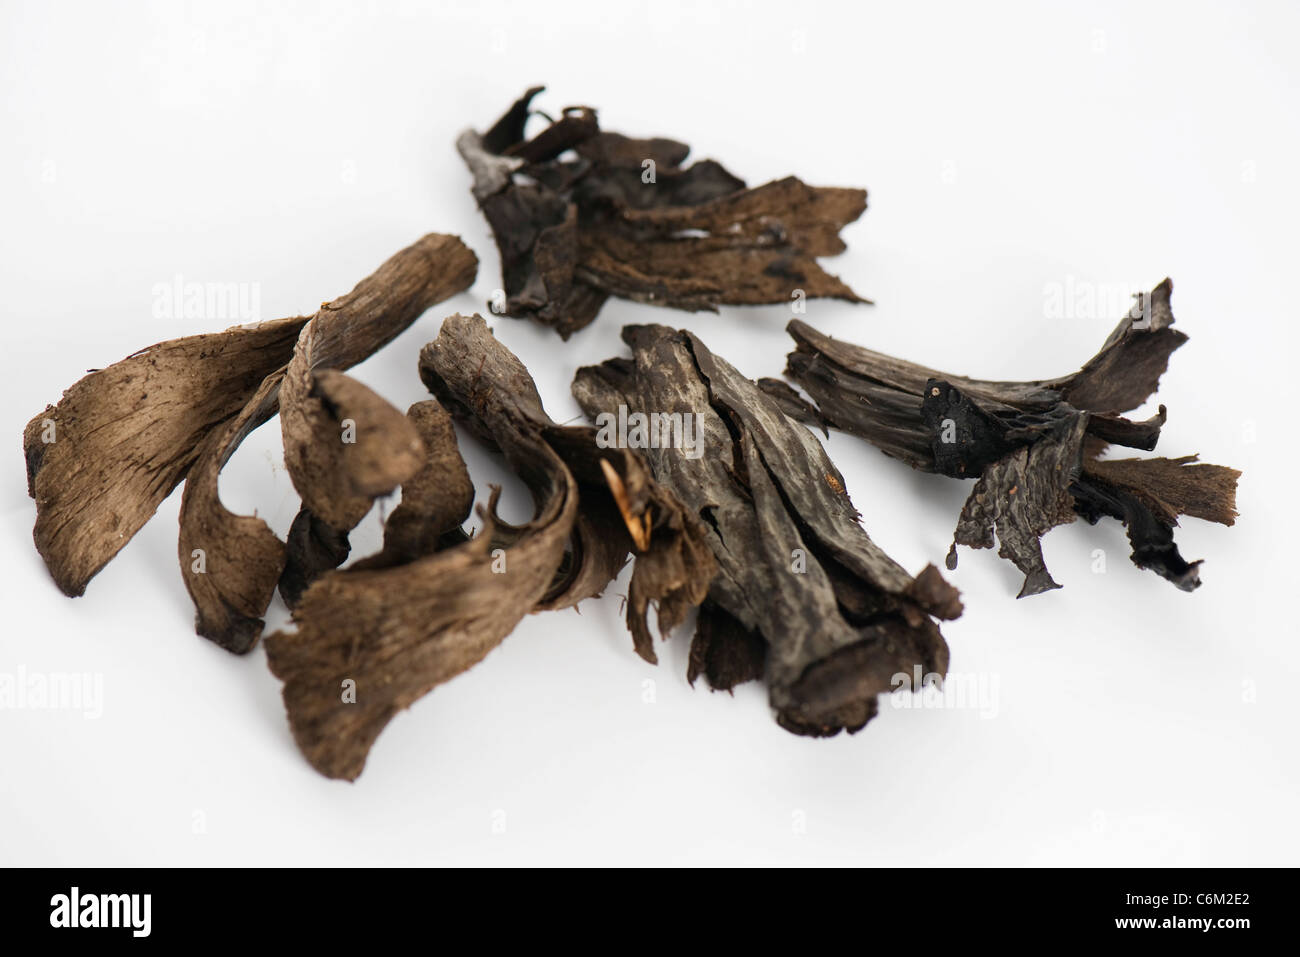 Trumpet of death mushrooms (Craterellus cornucopioides) Stock Photo